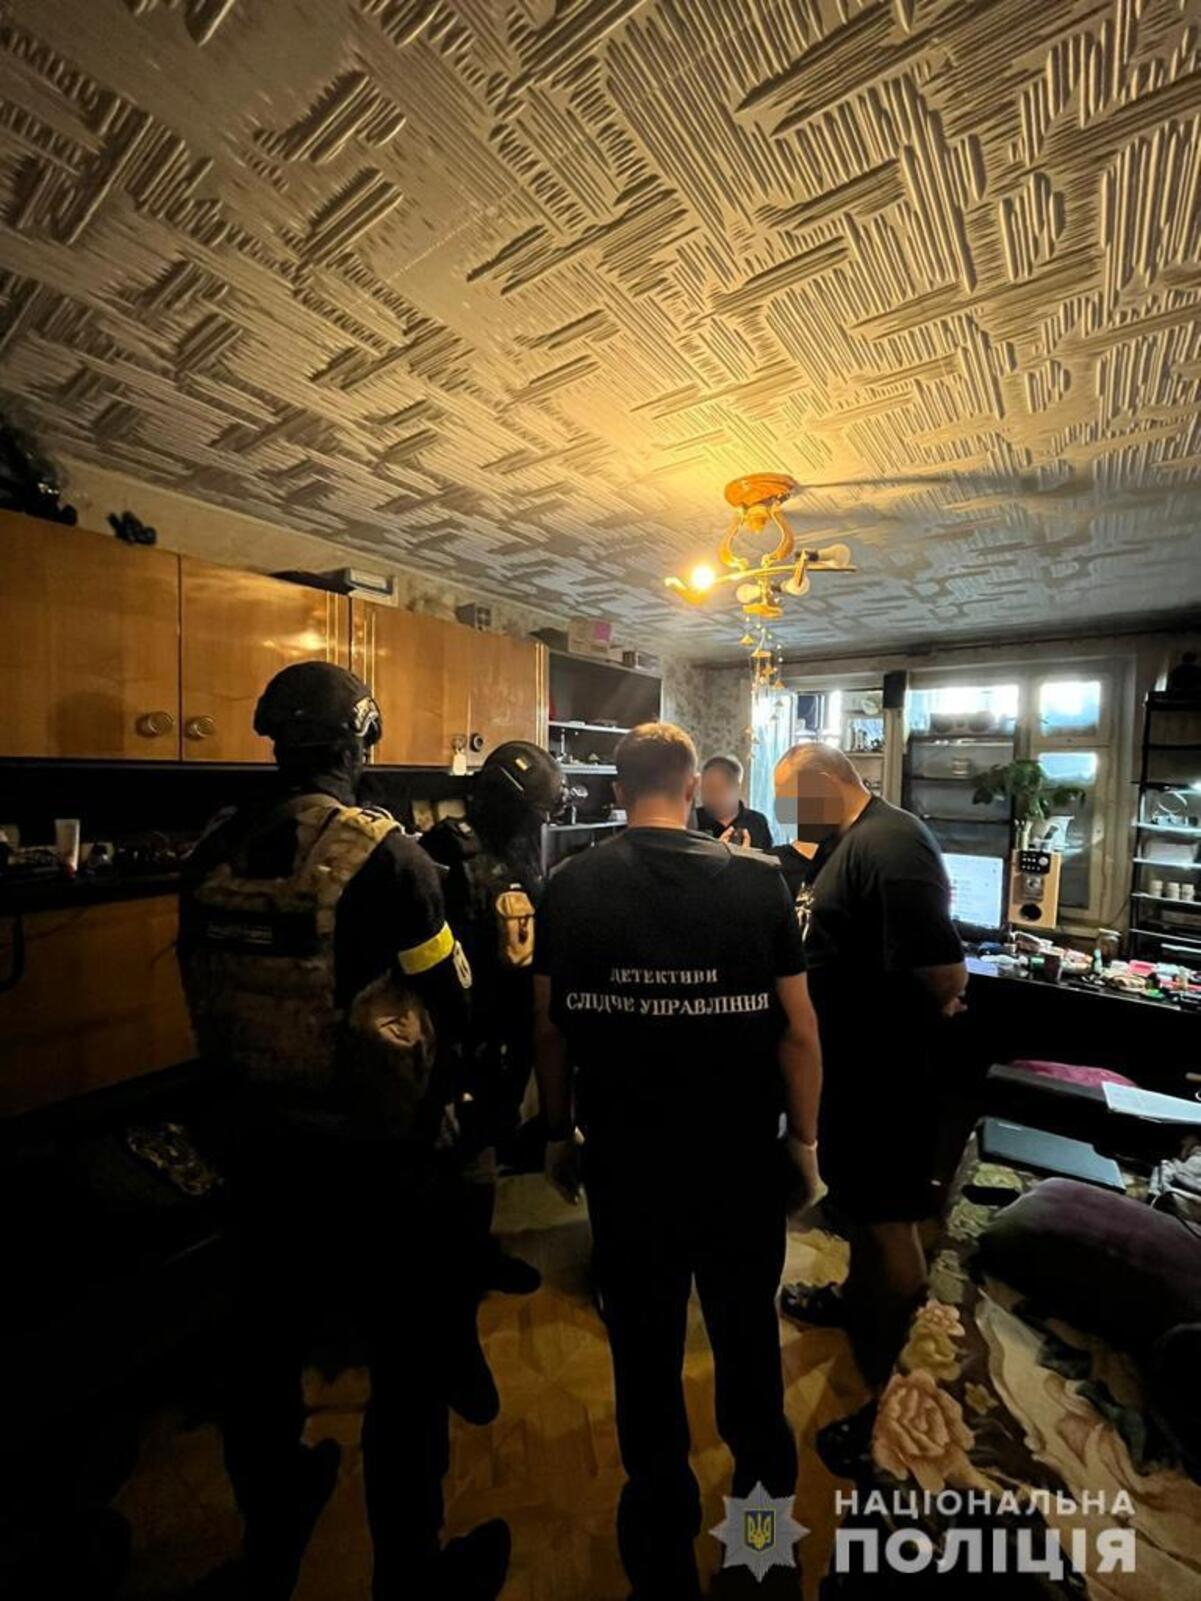 Правоохранители задержали предателя из Харькова